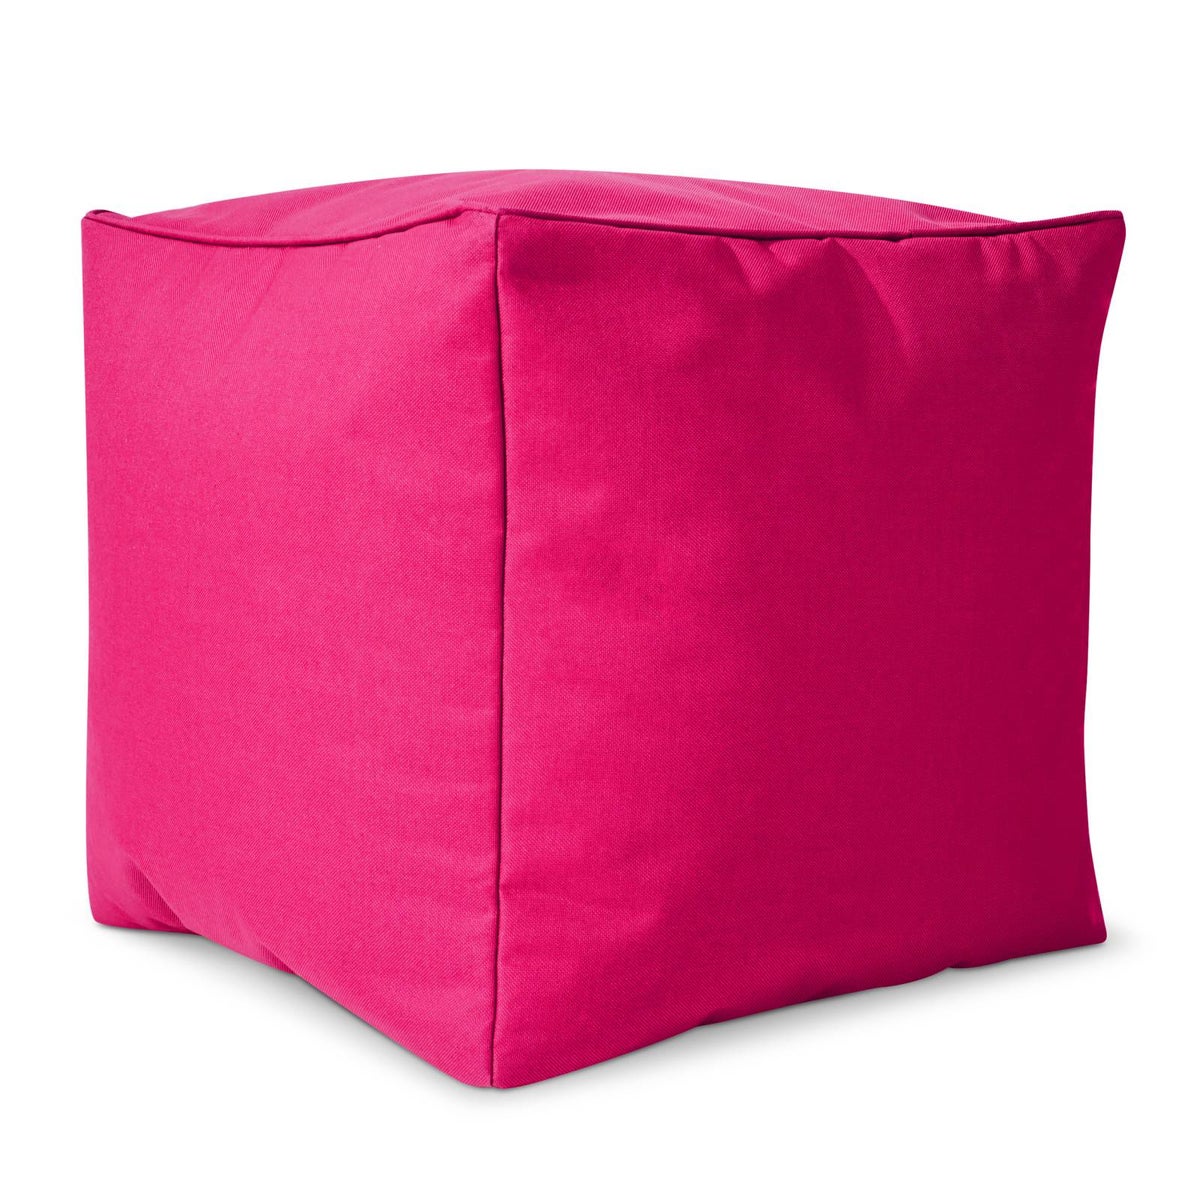 Green Bean© Sitzsack-Hocker 40x40x40cm mit EPS-Perlen Füllung - Fußhocker Fußkissen Sitz-Pouf für Sitzsäcke - Bodenkissen für Kinder und Erwachsene - Fußablage Sitzkissen Sitzhocker Pink